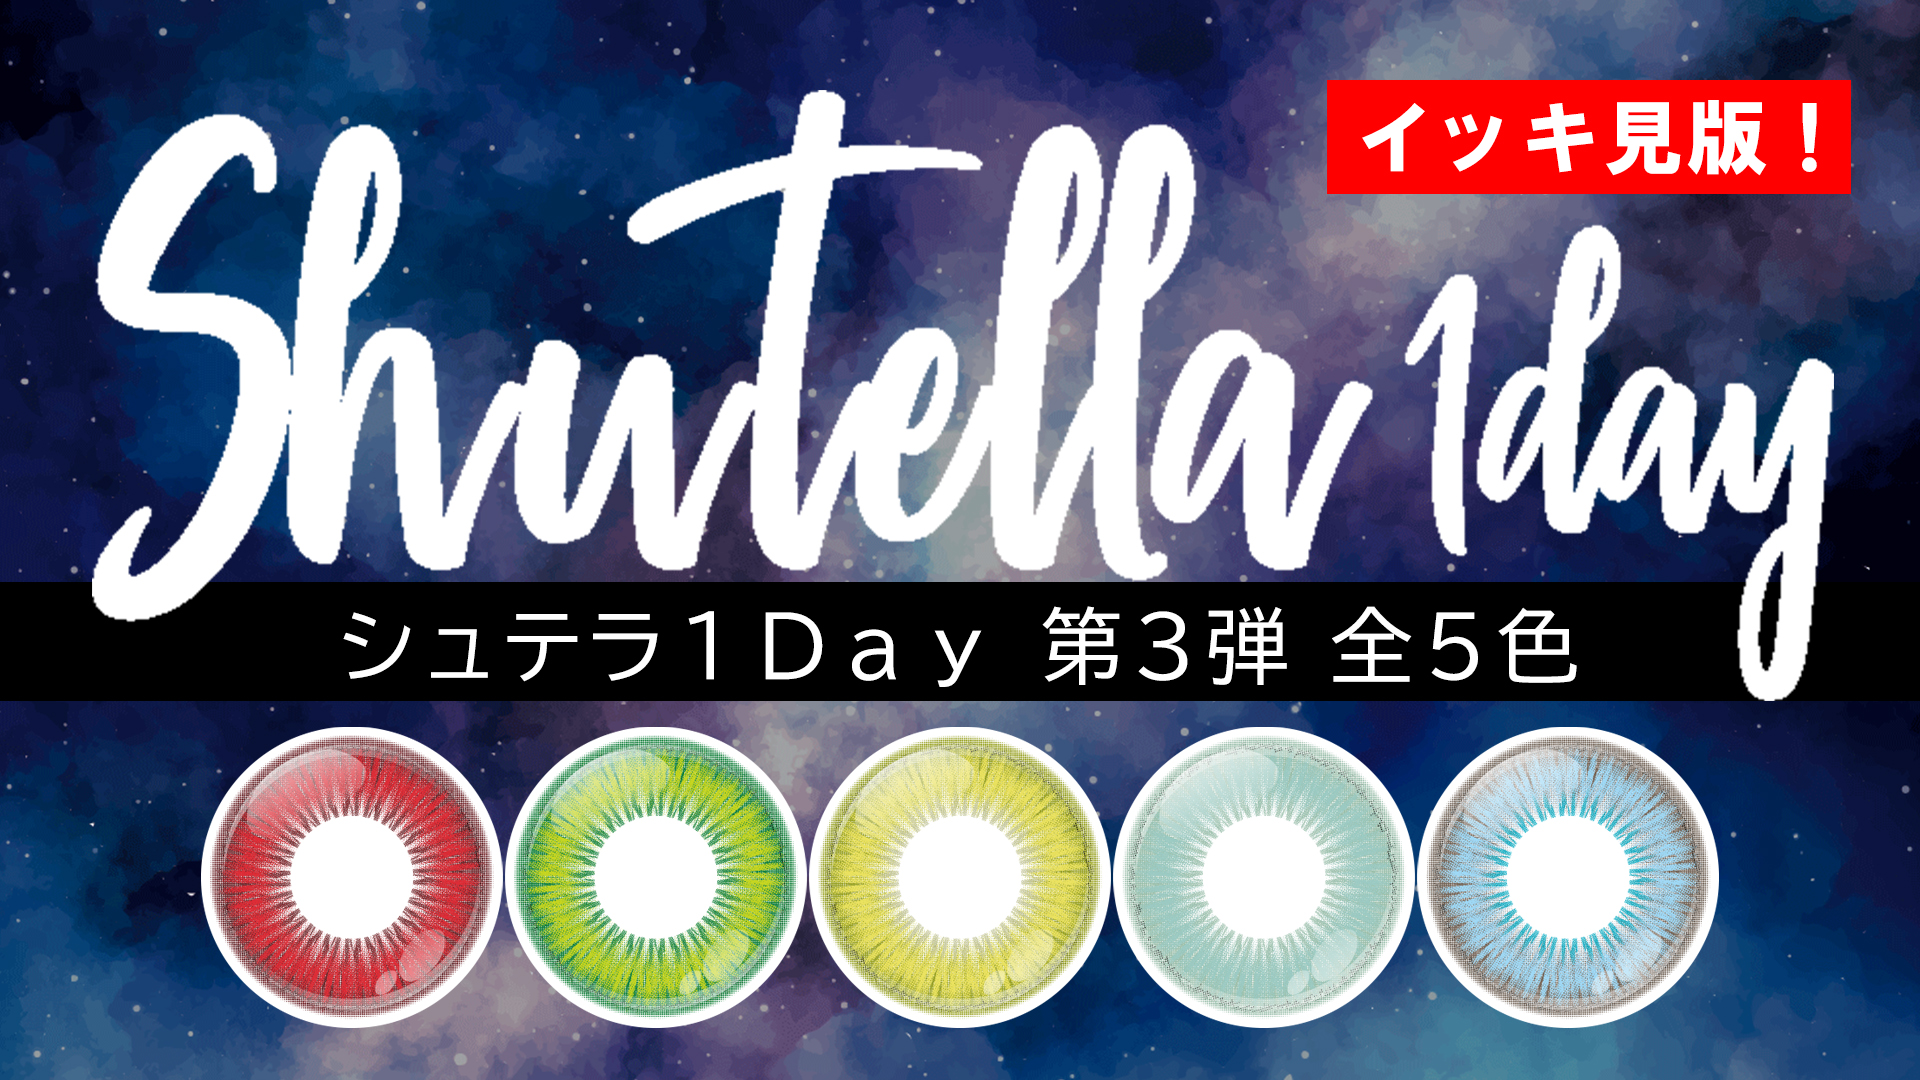 【新色】Shutella(シュテラ) 1Day第3弾 全5色 一気見!【9/9発売!】